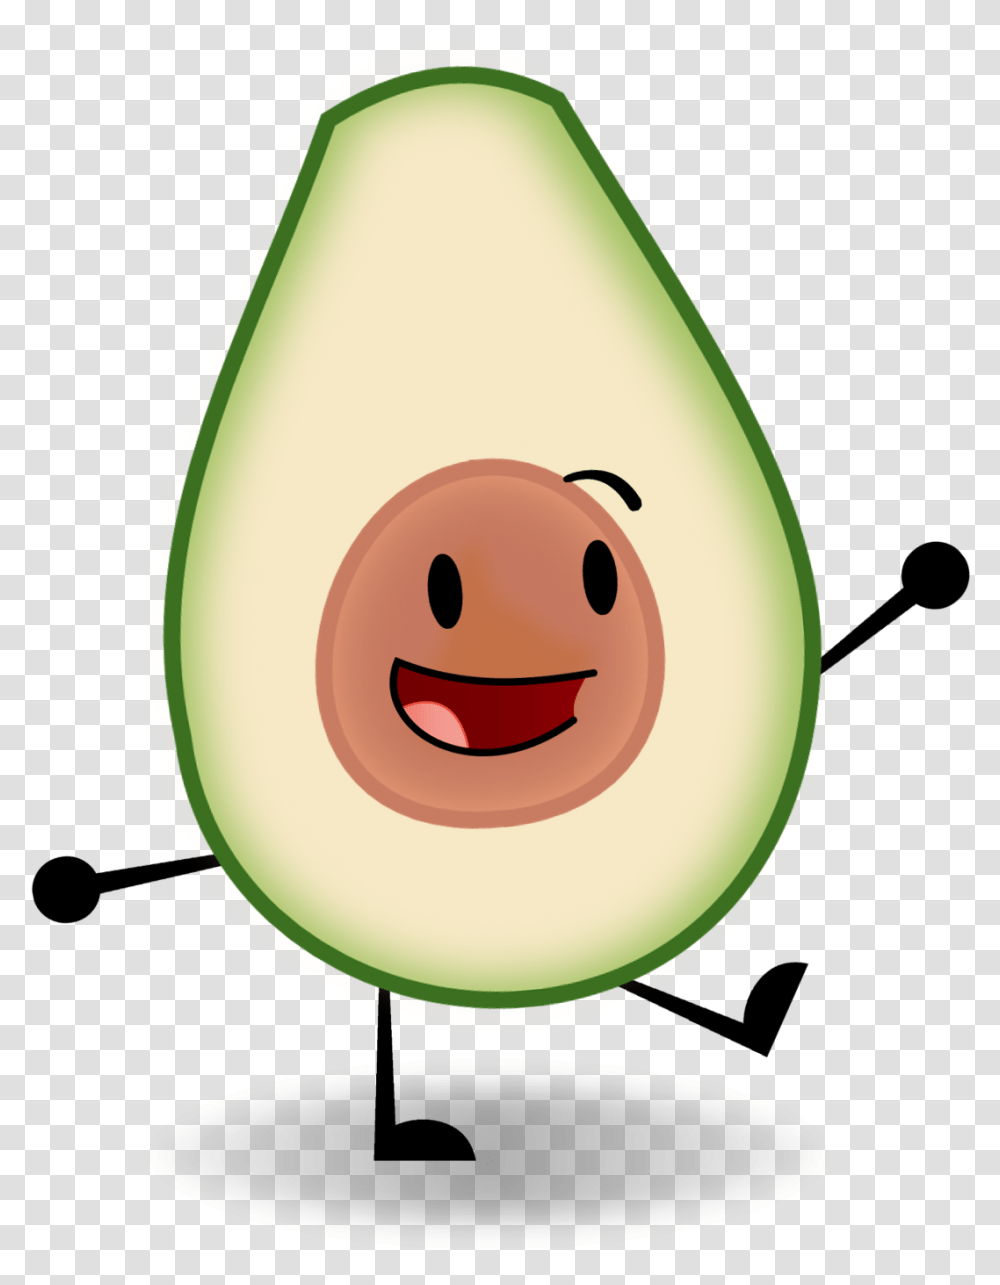 Avocado Clipart Cartoon Object Show Avocado, Plant, Fruit, Food, Melon Transparent Png